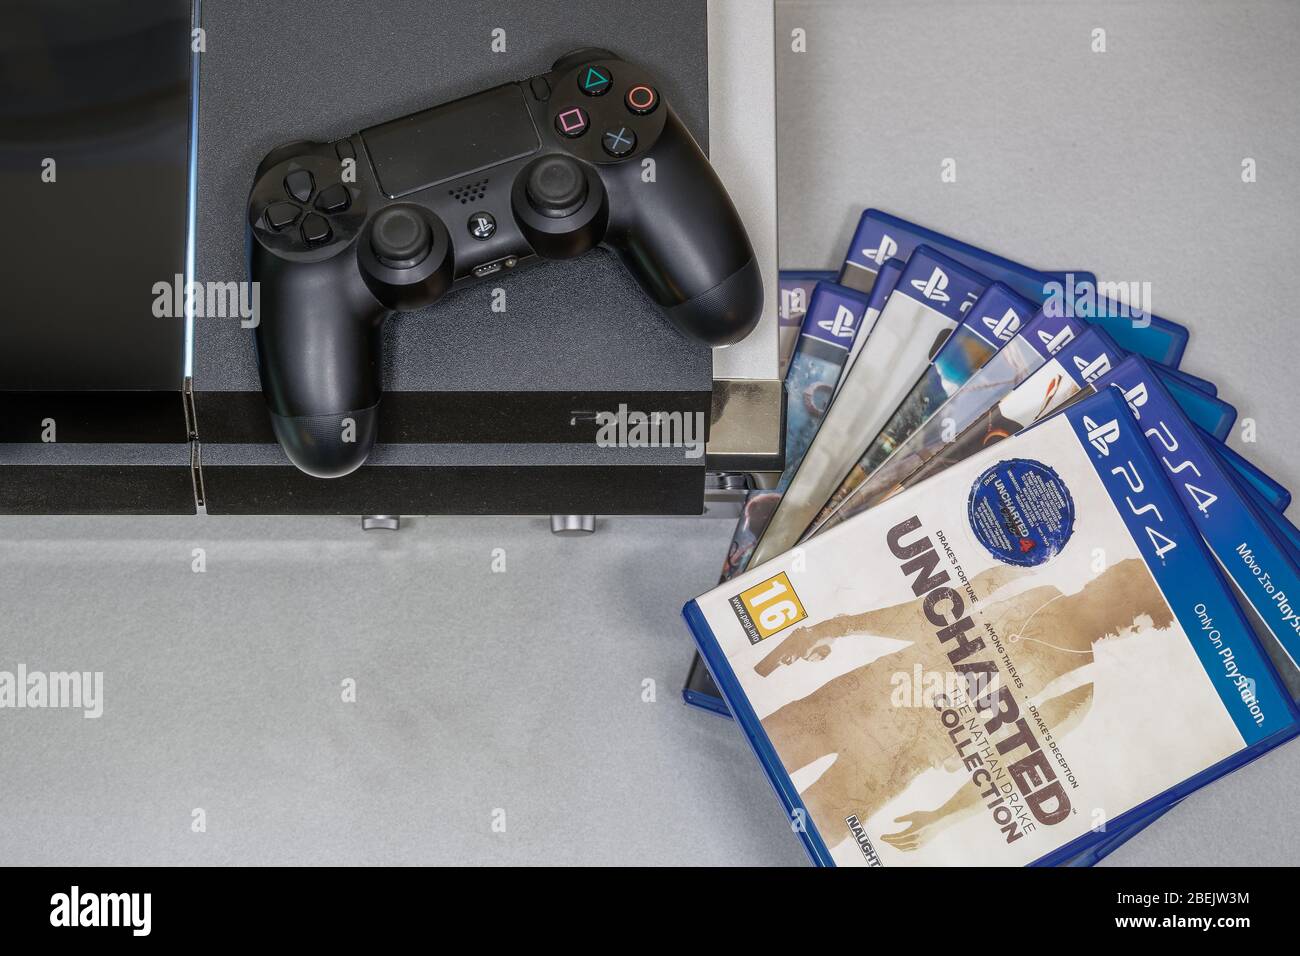 Títulos de juegos para PlayStation 4 junto a la vista superior del  dispositivo. Serie de portadas para juegos de PS4 junto a la consola de  juegos de Sony y el mando inalámbrico